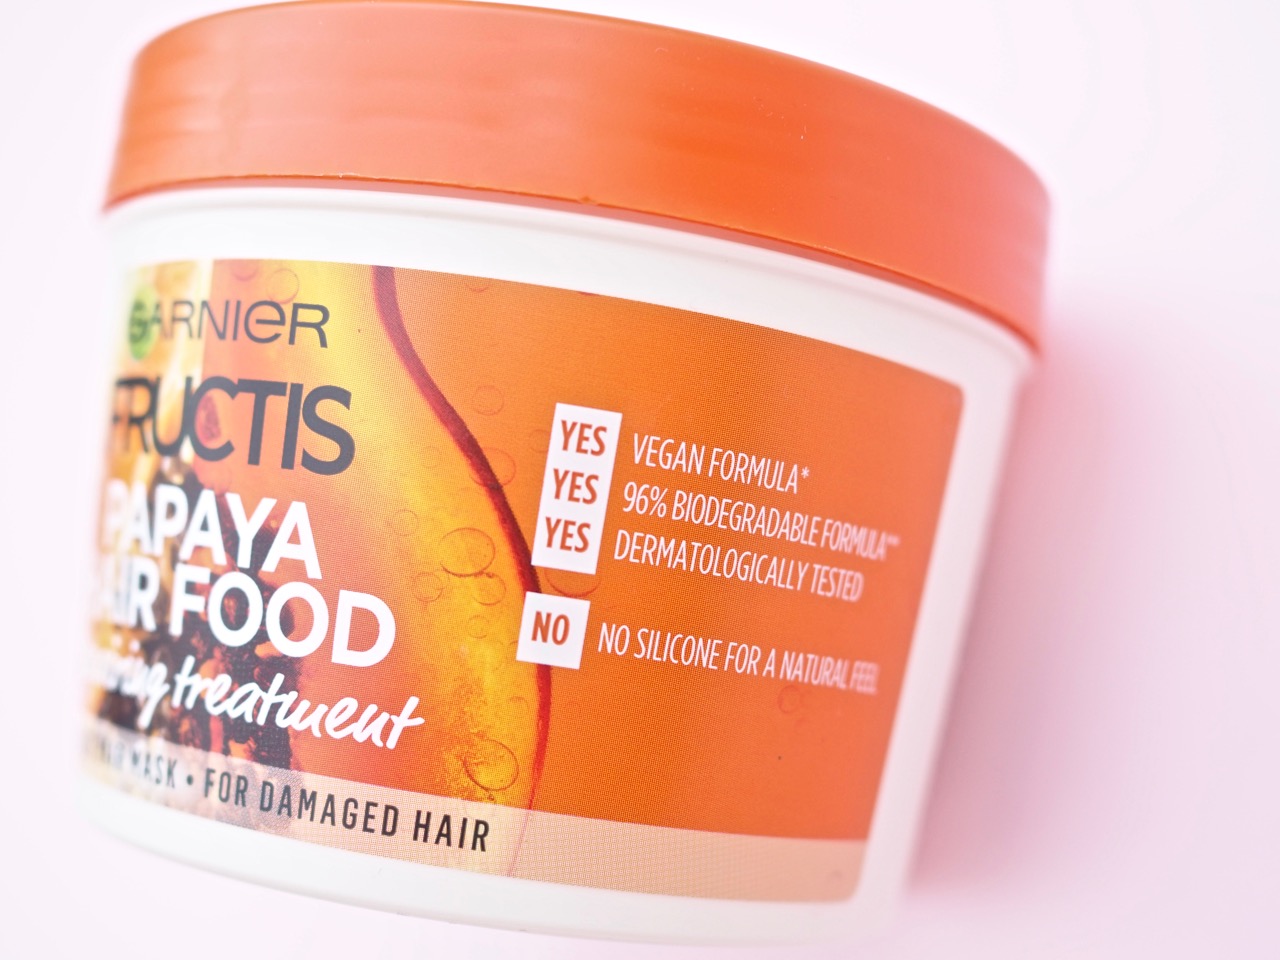 Garnier hiusnaamio Papaya Hairfood kokemuksia Ostolakossa Virve Fredman